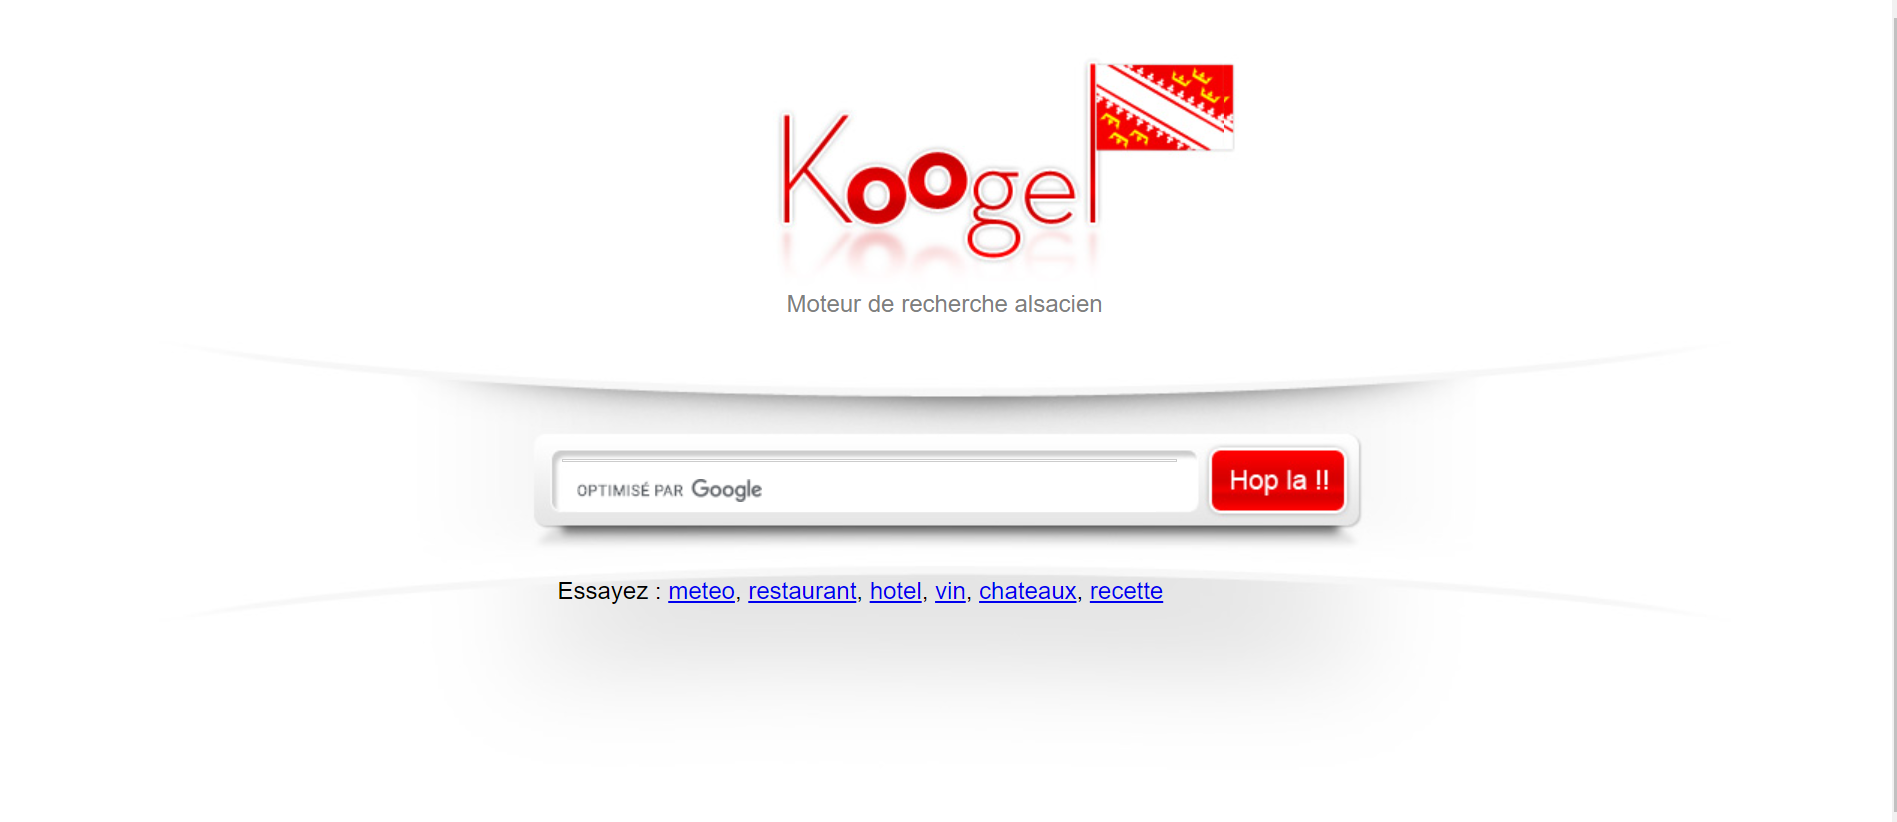 Buscadores aparte de Google: Koogel